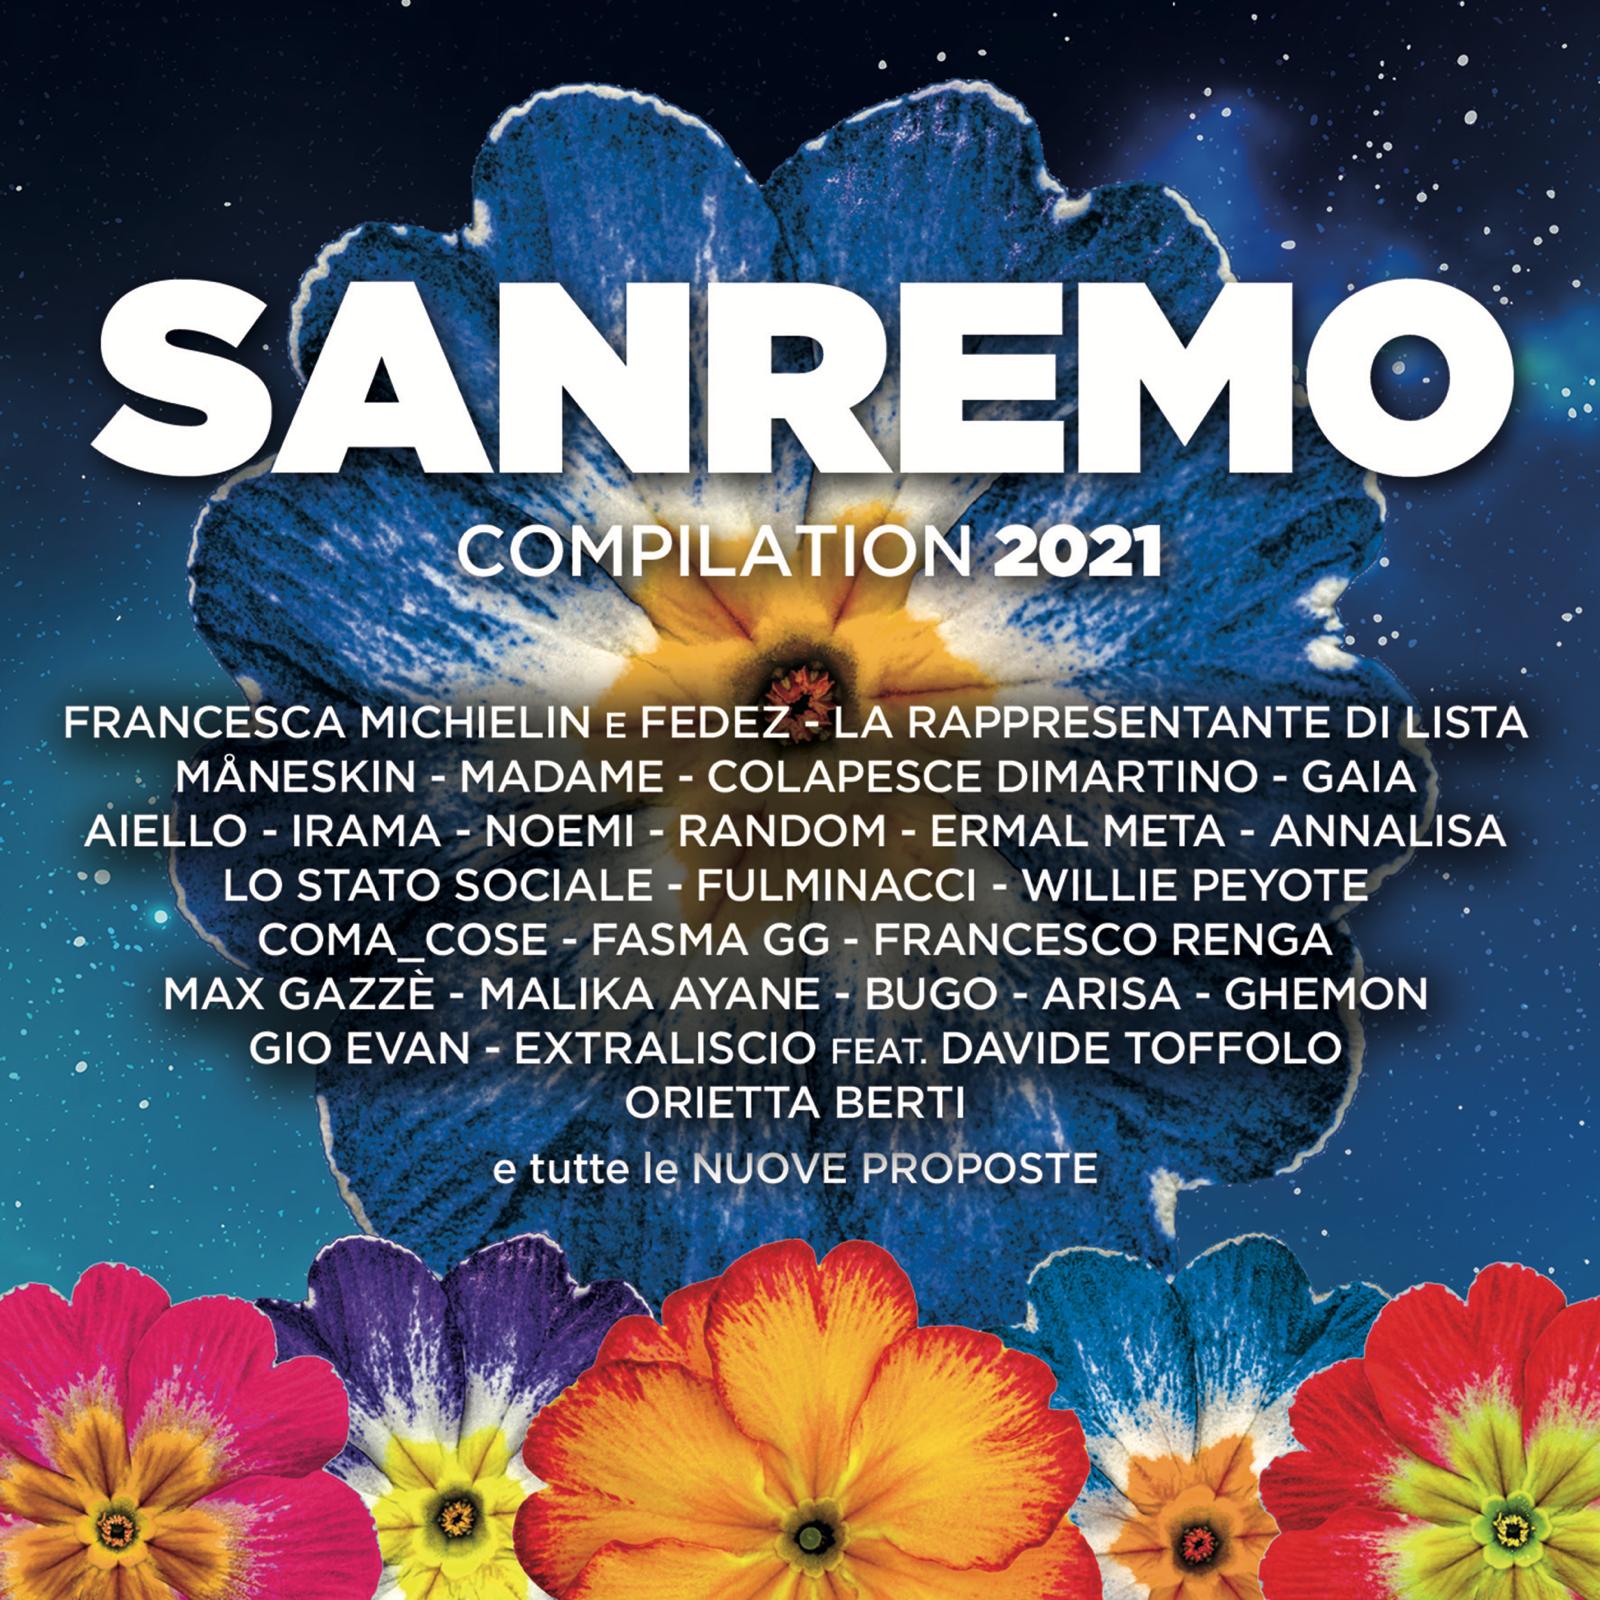 Sanremo 2021, da oggi la compilation con tutte le canzoni